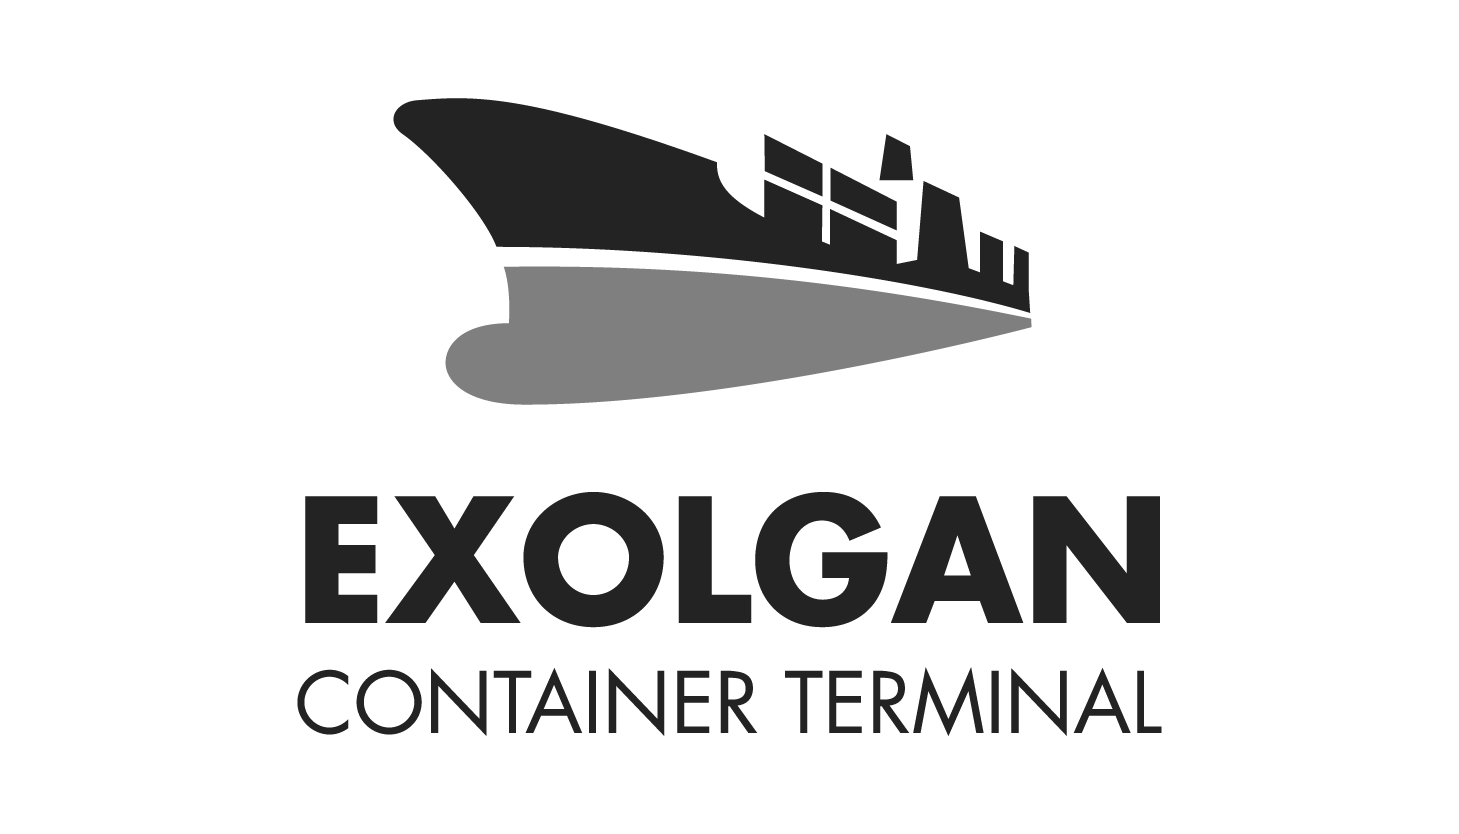 Exolgan Container Terminal logo escala de grises